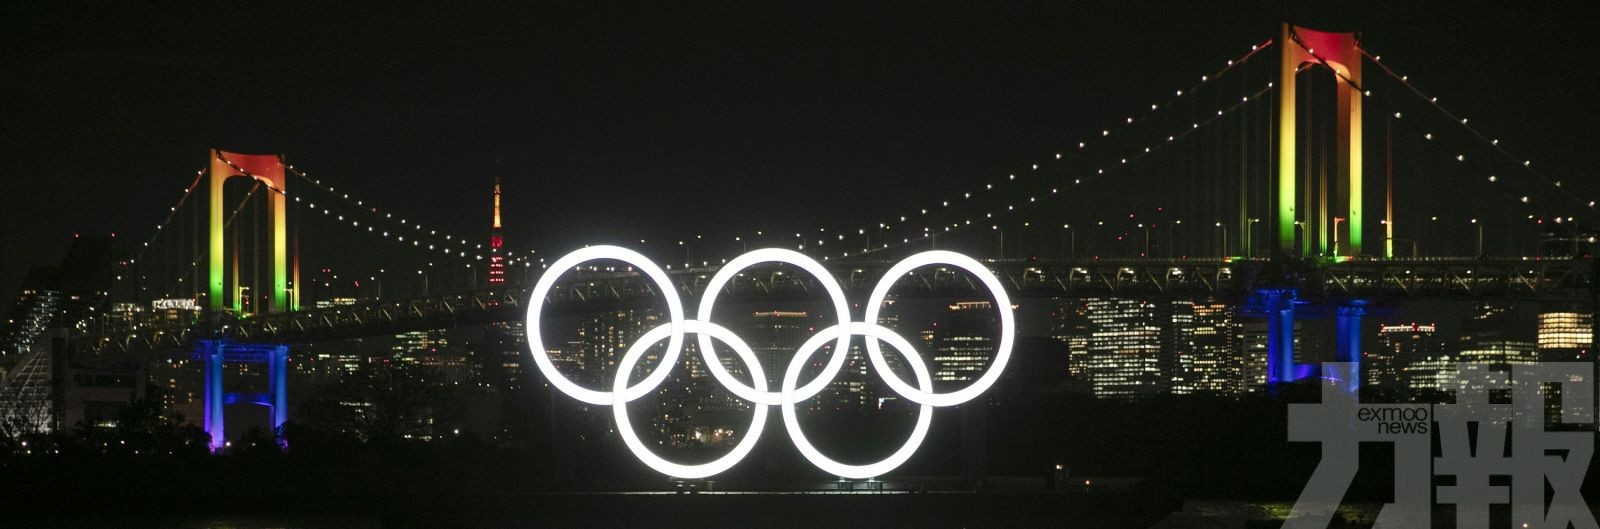 東京奧運公布最終經費開支